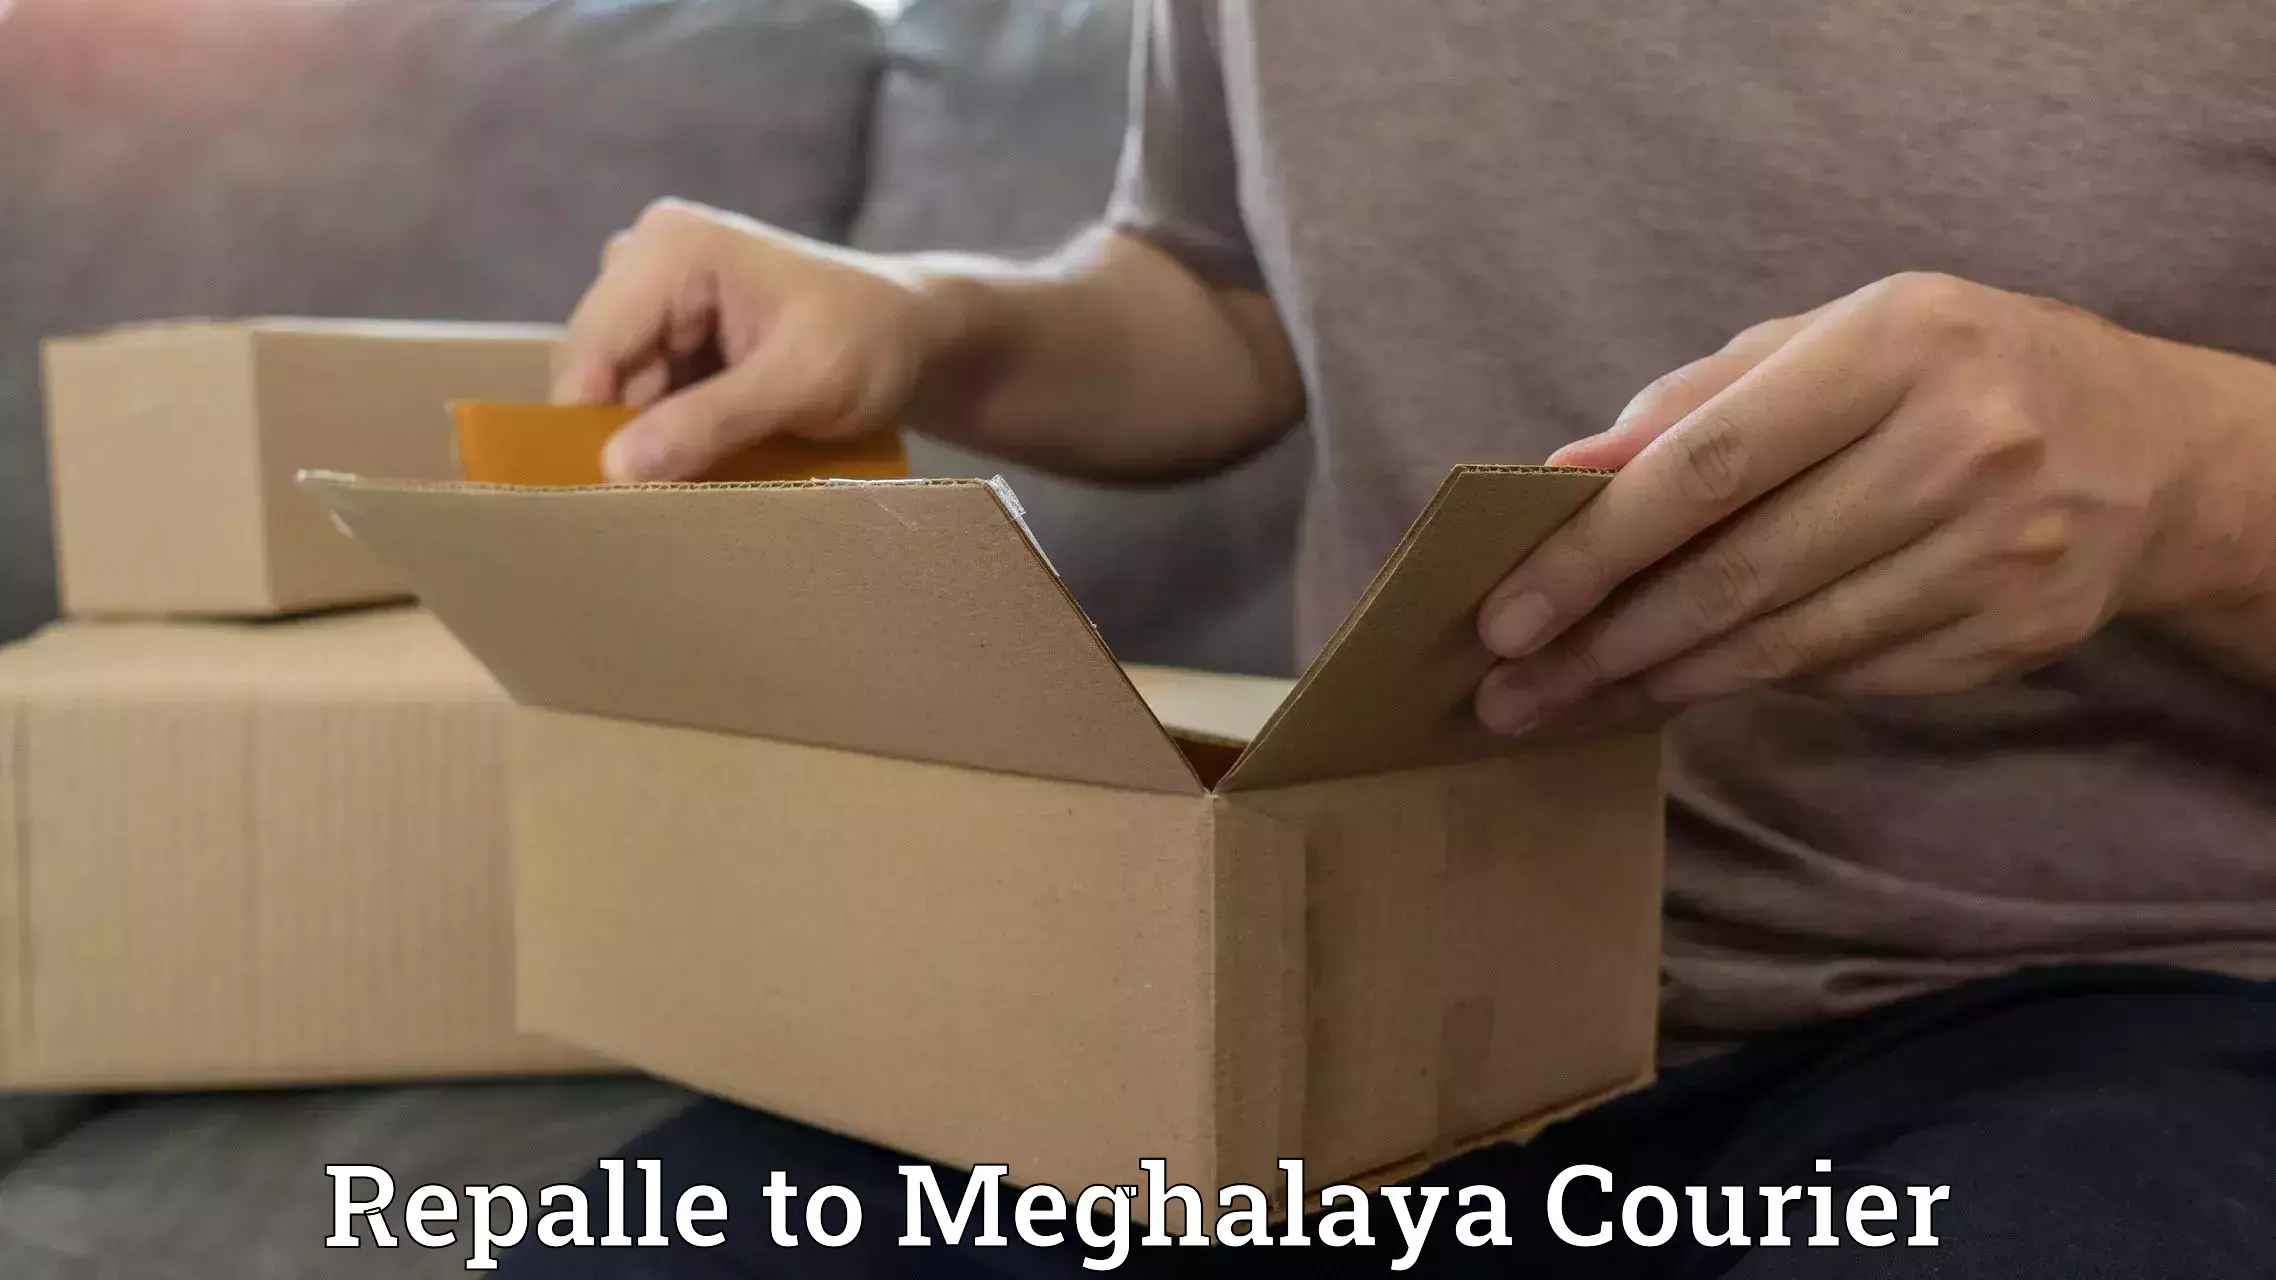 Easy return solutions in Repalle to Meghalaya